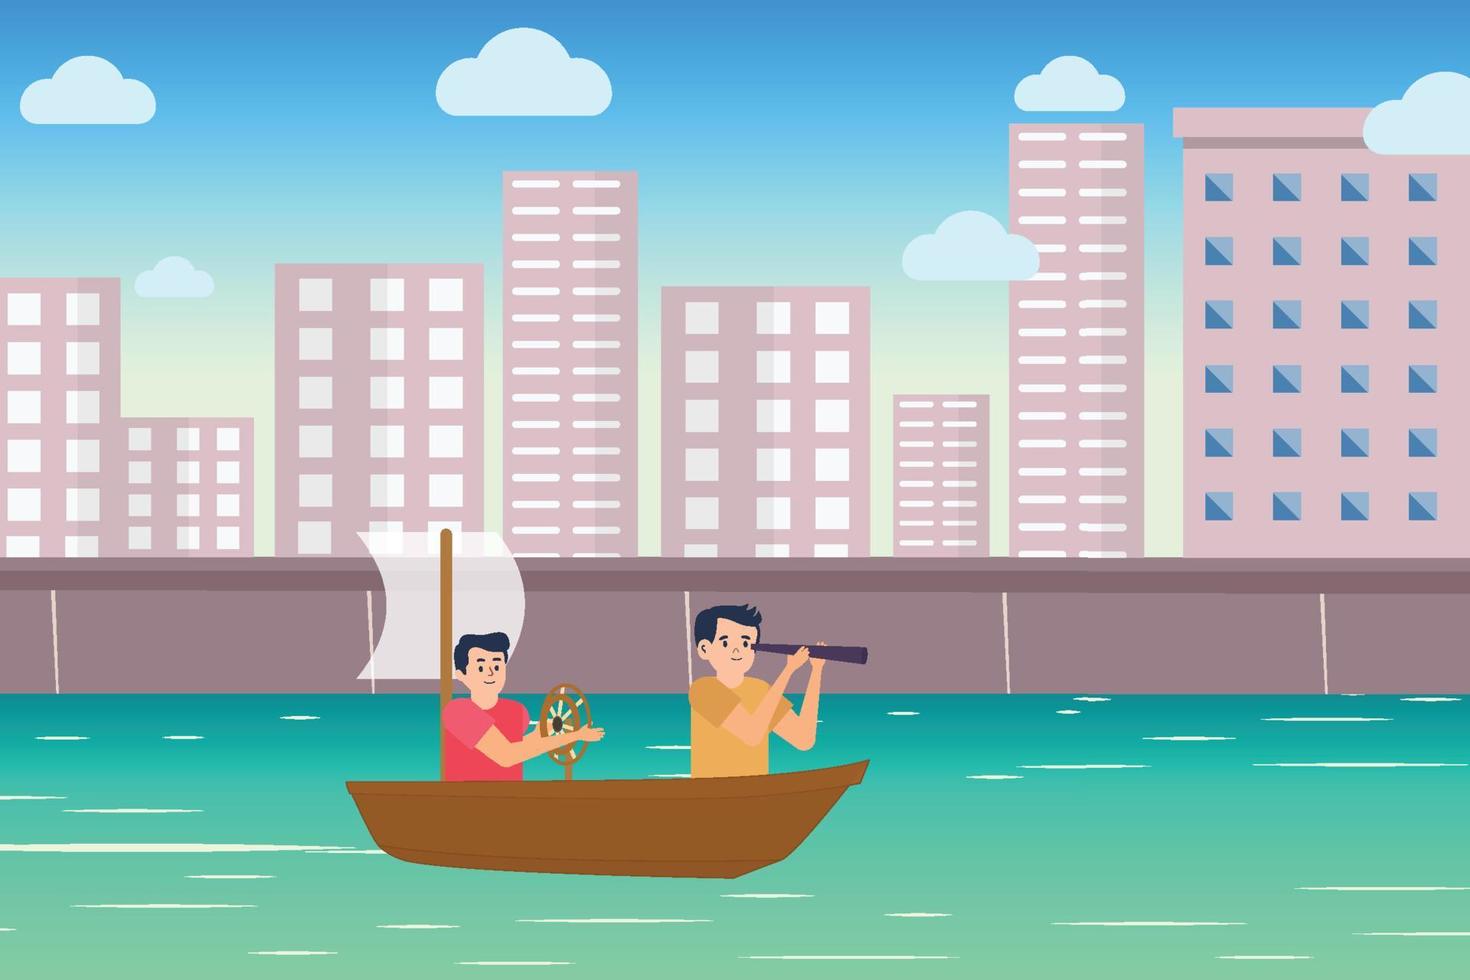 kleine jongen platte karakter illustratie met een kleine boot en stedelijk meer. kinderen spelen met de boot op een meer met een stadsgezicht achtergrond. speelbare kinderen met scope en speelgoedvaartuig op het water. vector